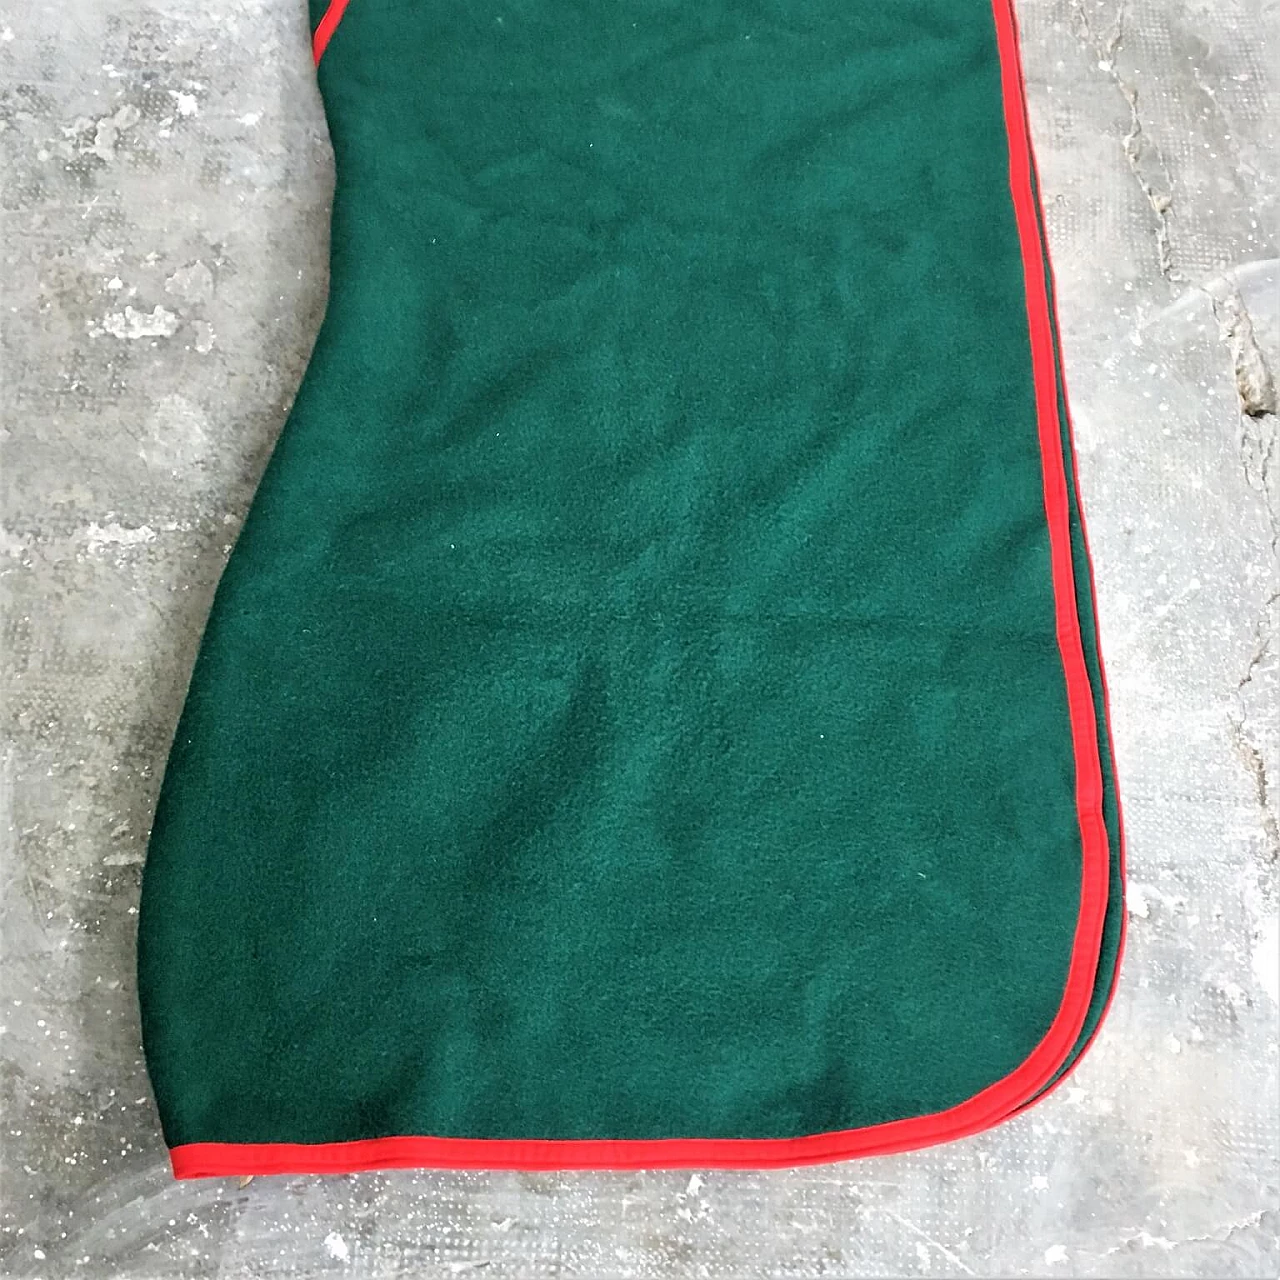 Coperta verde Selleria Pariani, realizzata a mano, pura lana vergine, profili rossi e cuoio, 1980 1071708